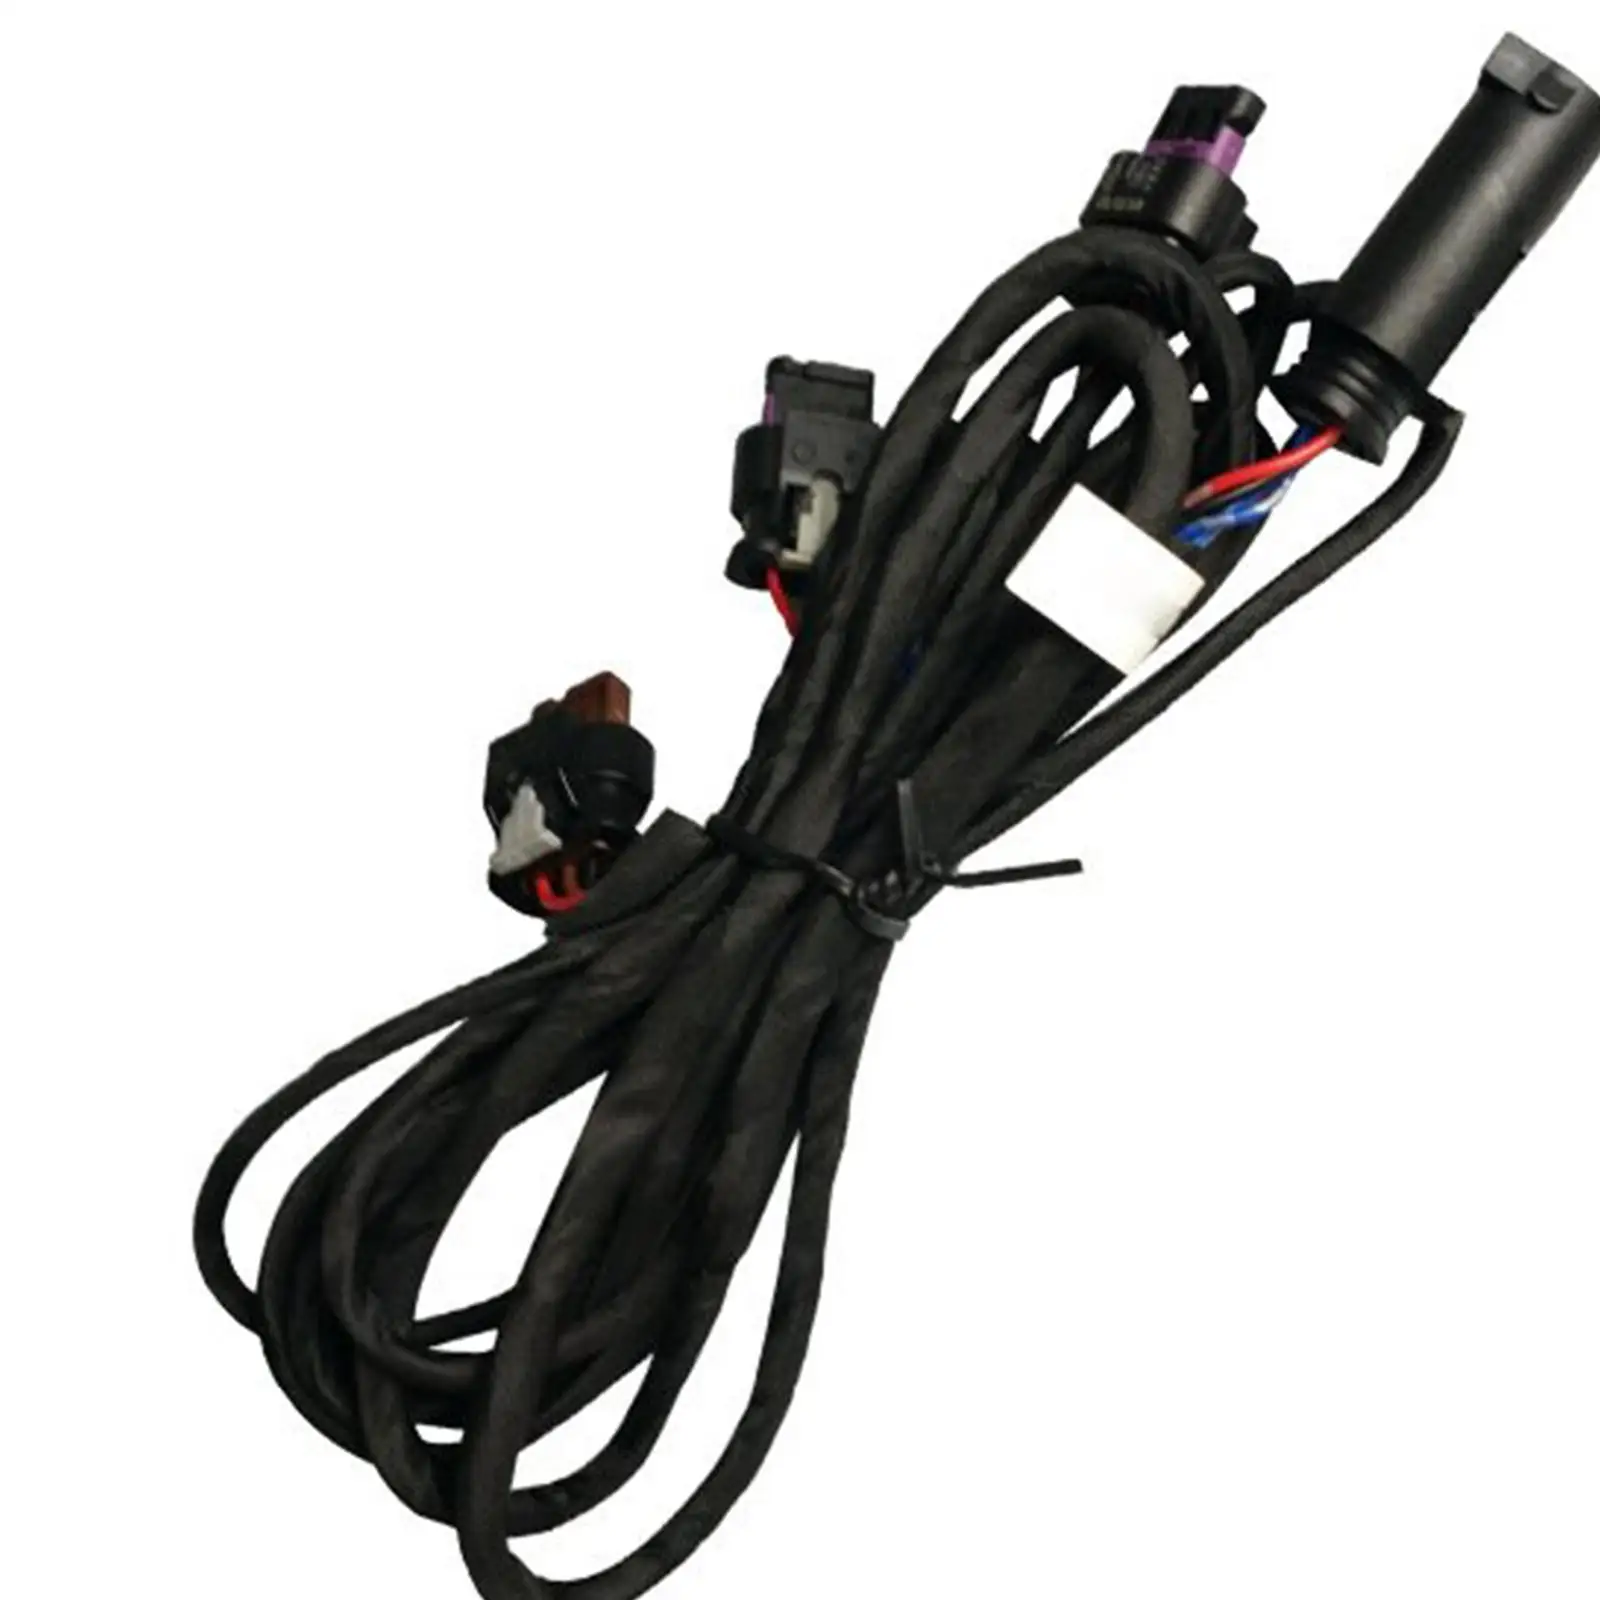 Parking Sensor Loom Wiring Harness Replacement Car Accessories for BMW 3 Series 4 Series F32 F30 Lci F82 M4 F80 M3 Lci